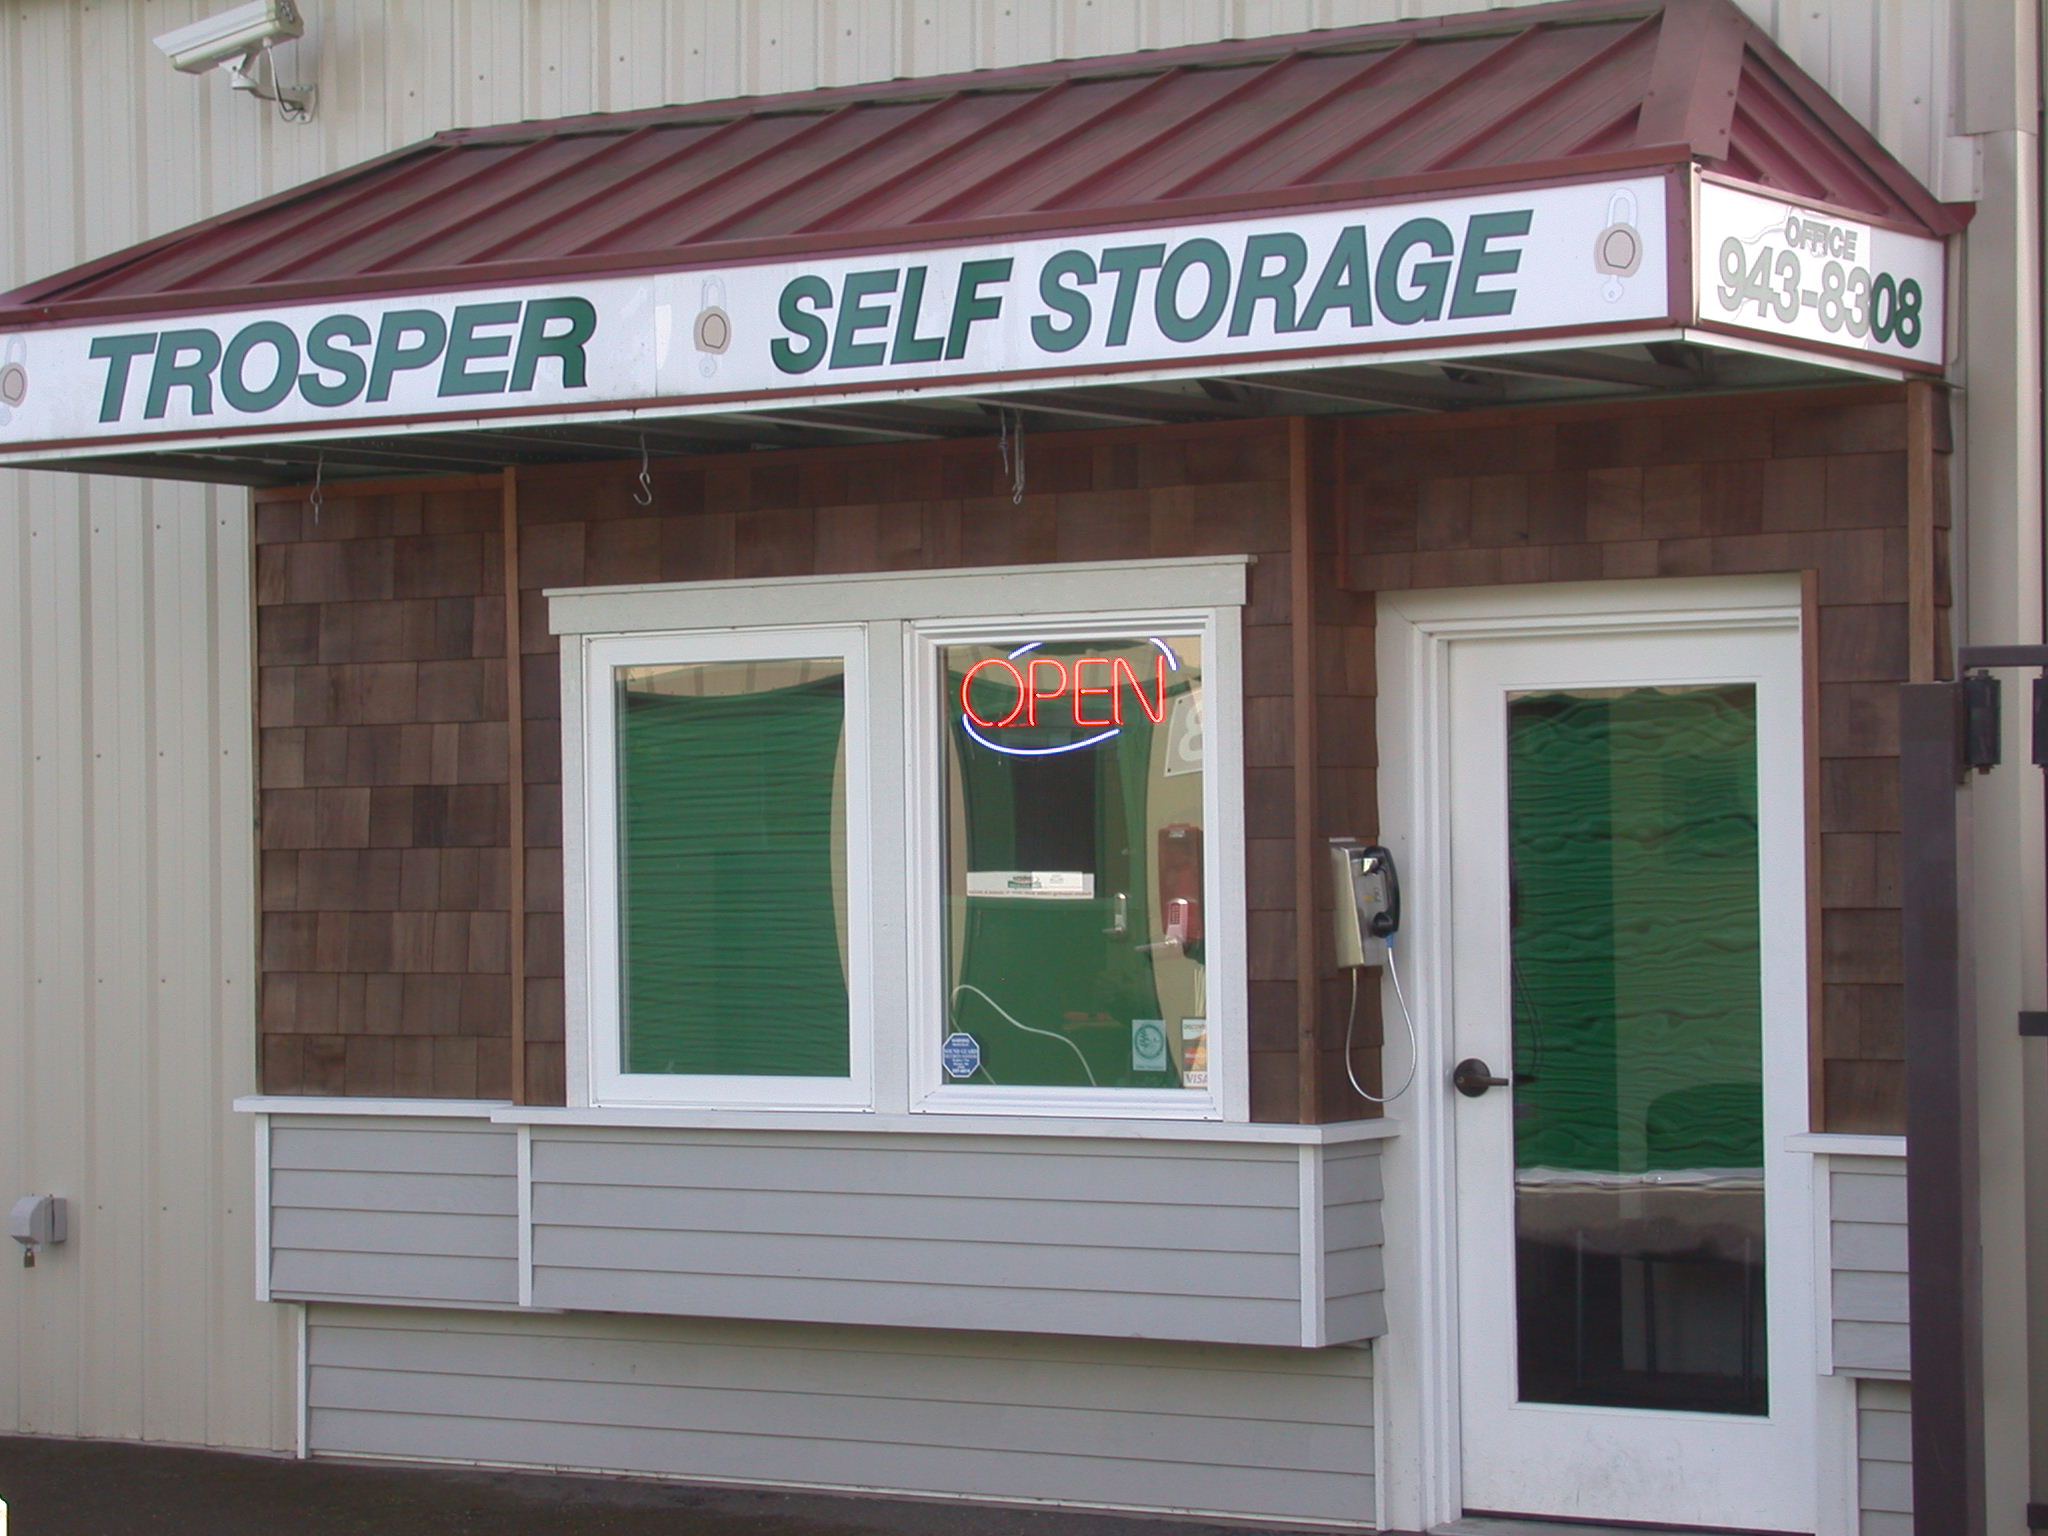 Trosper Self Storage Office